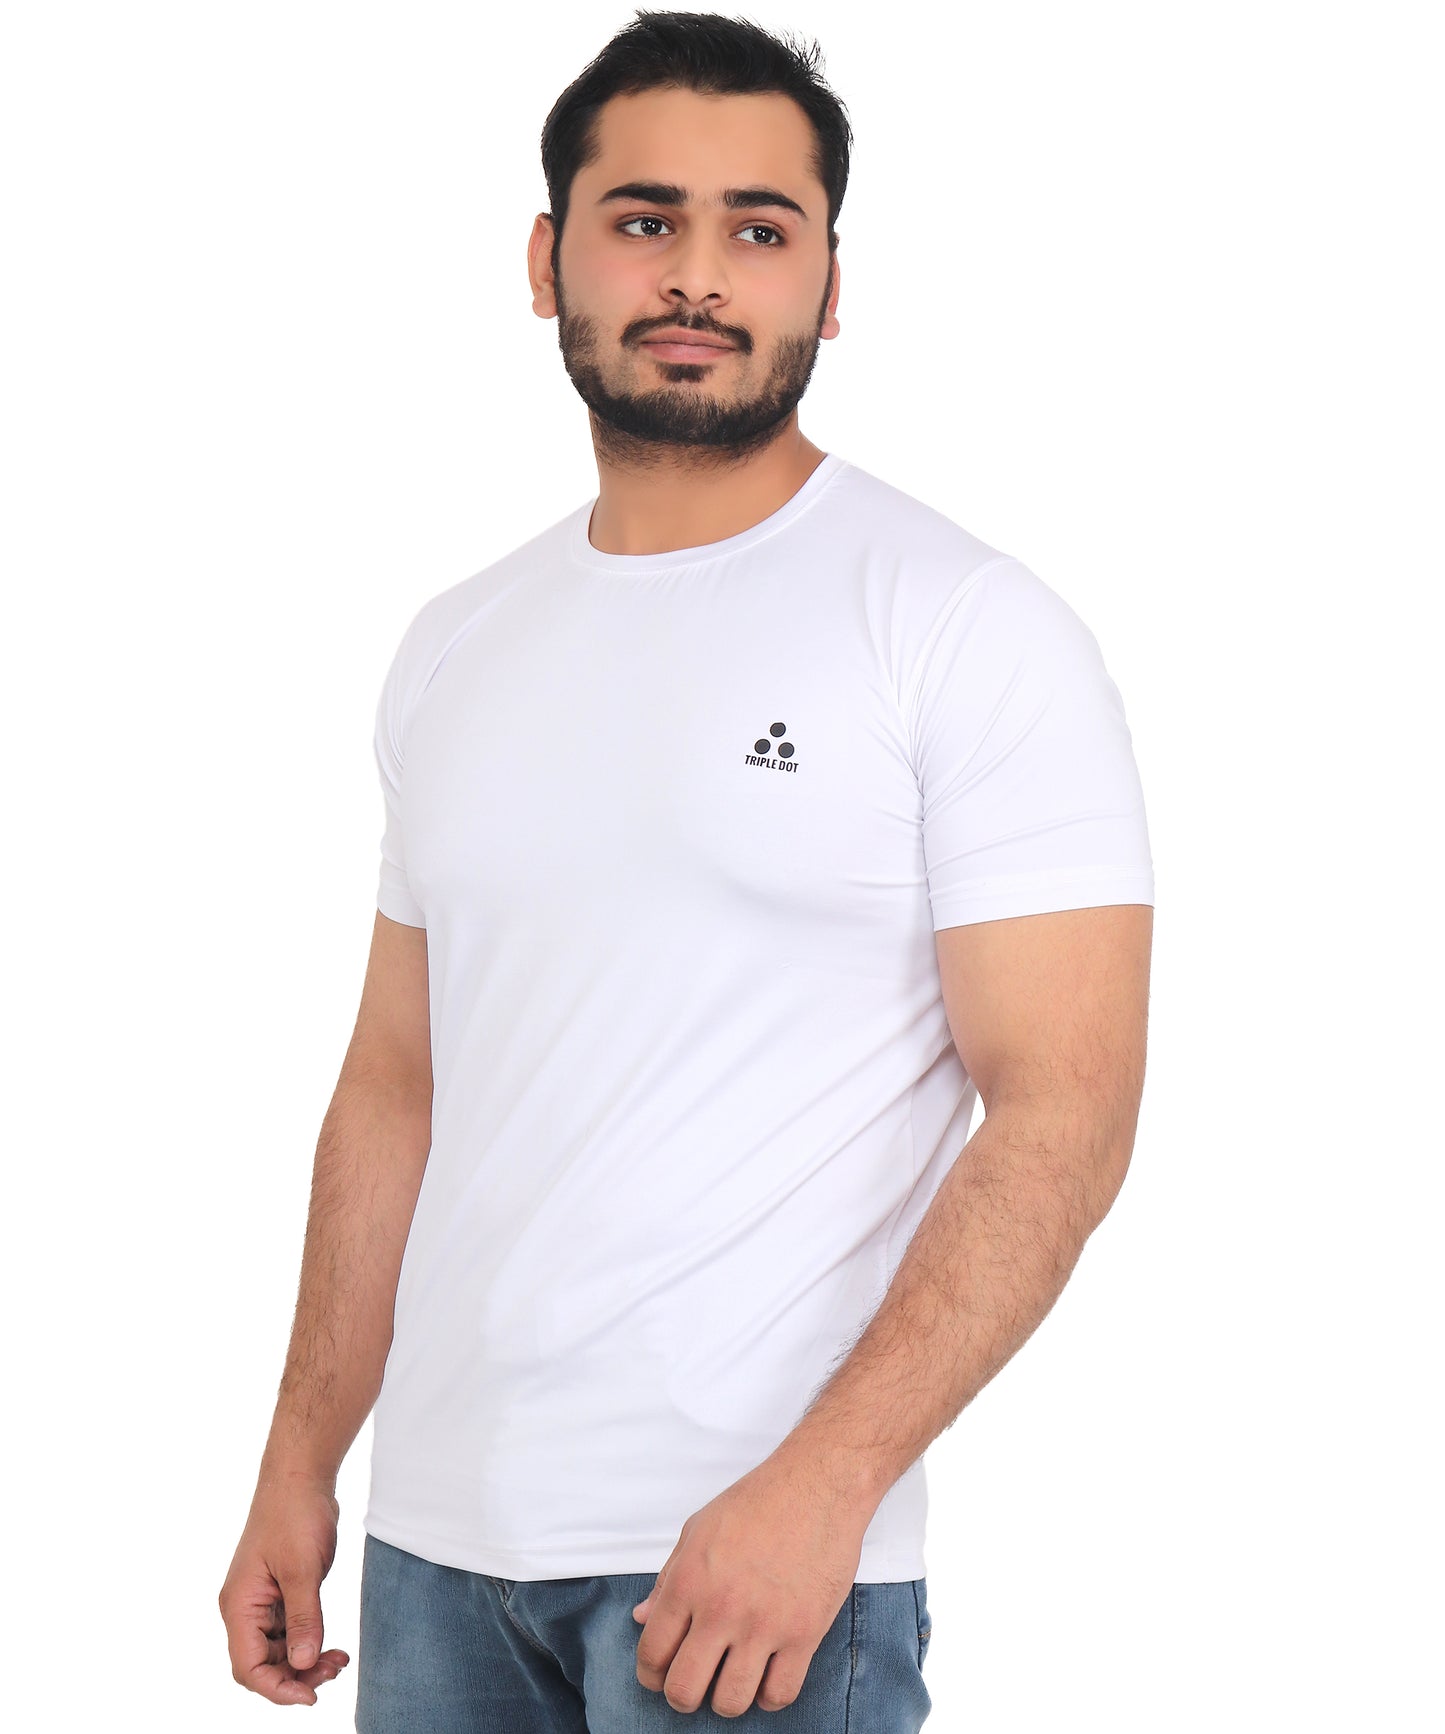 Triple Dot White Polyester Round Neck Sport T shirt for Men - Triple Dot Clothings